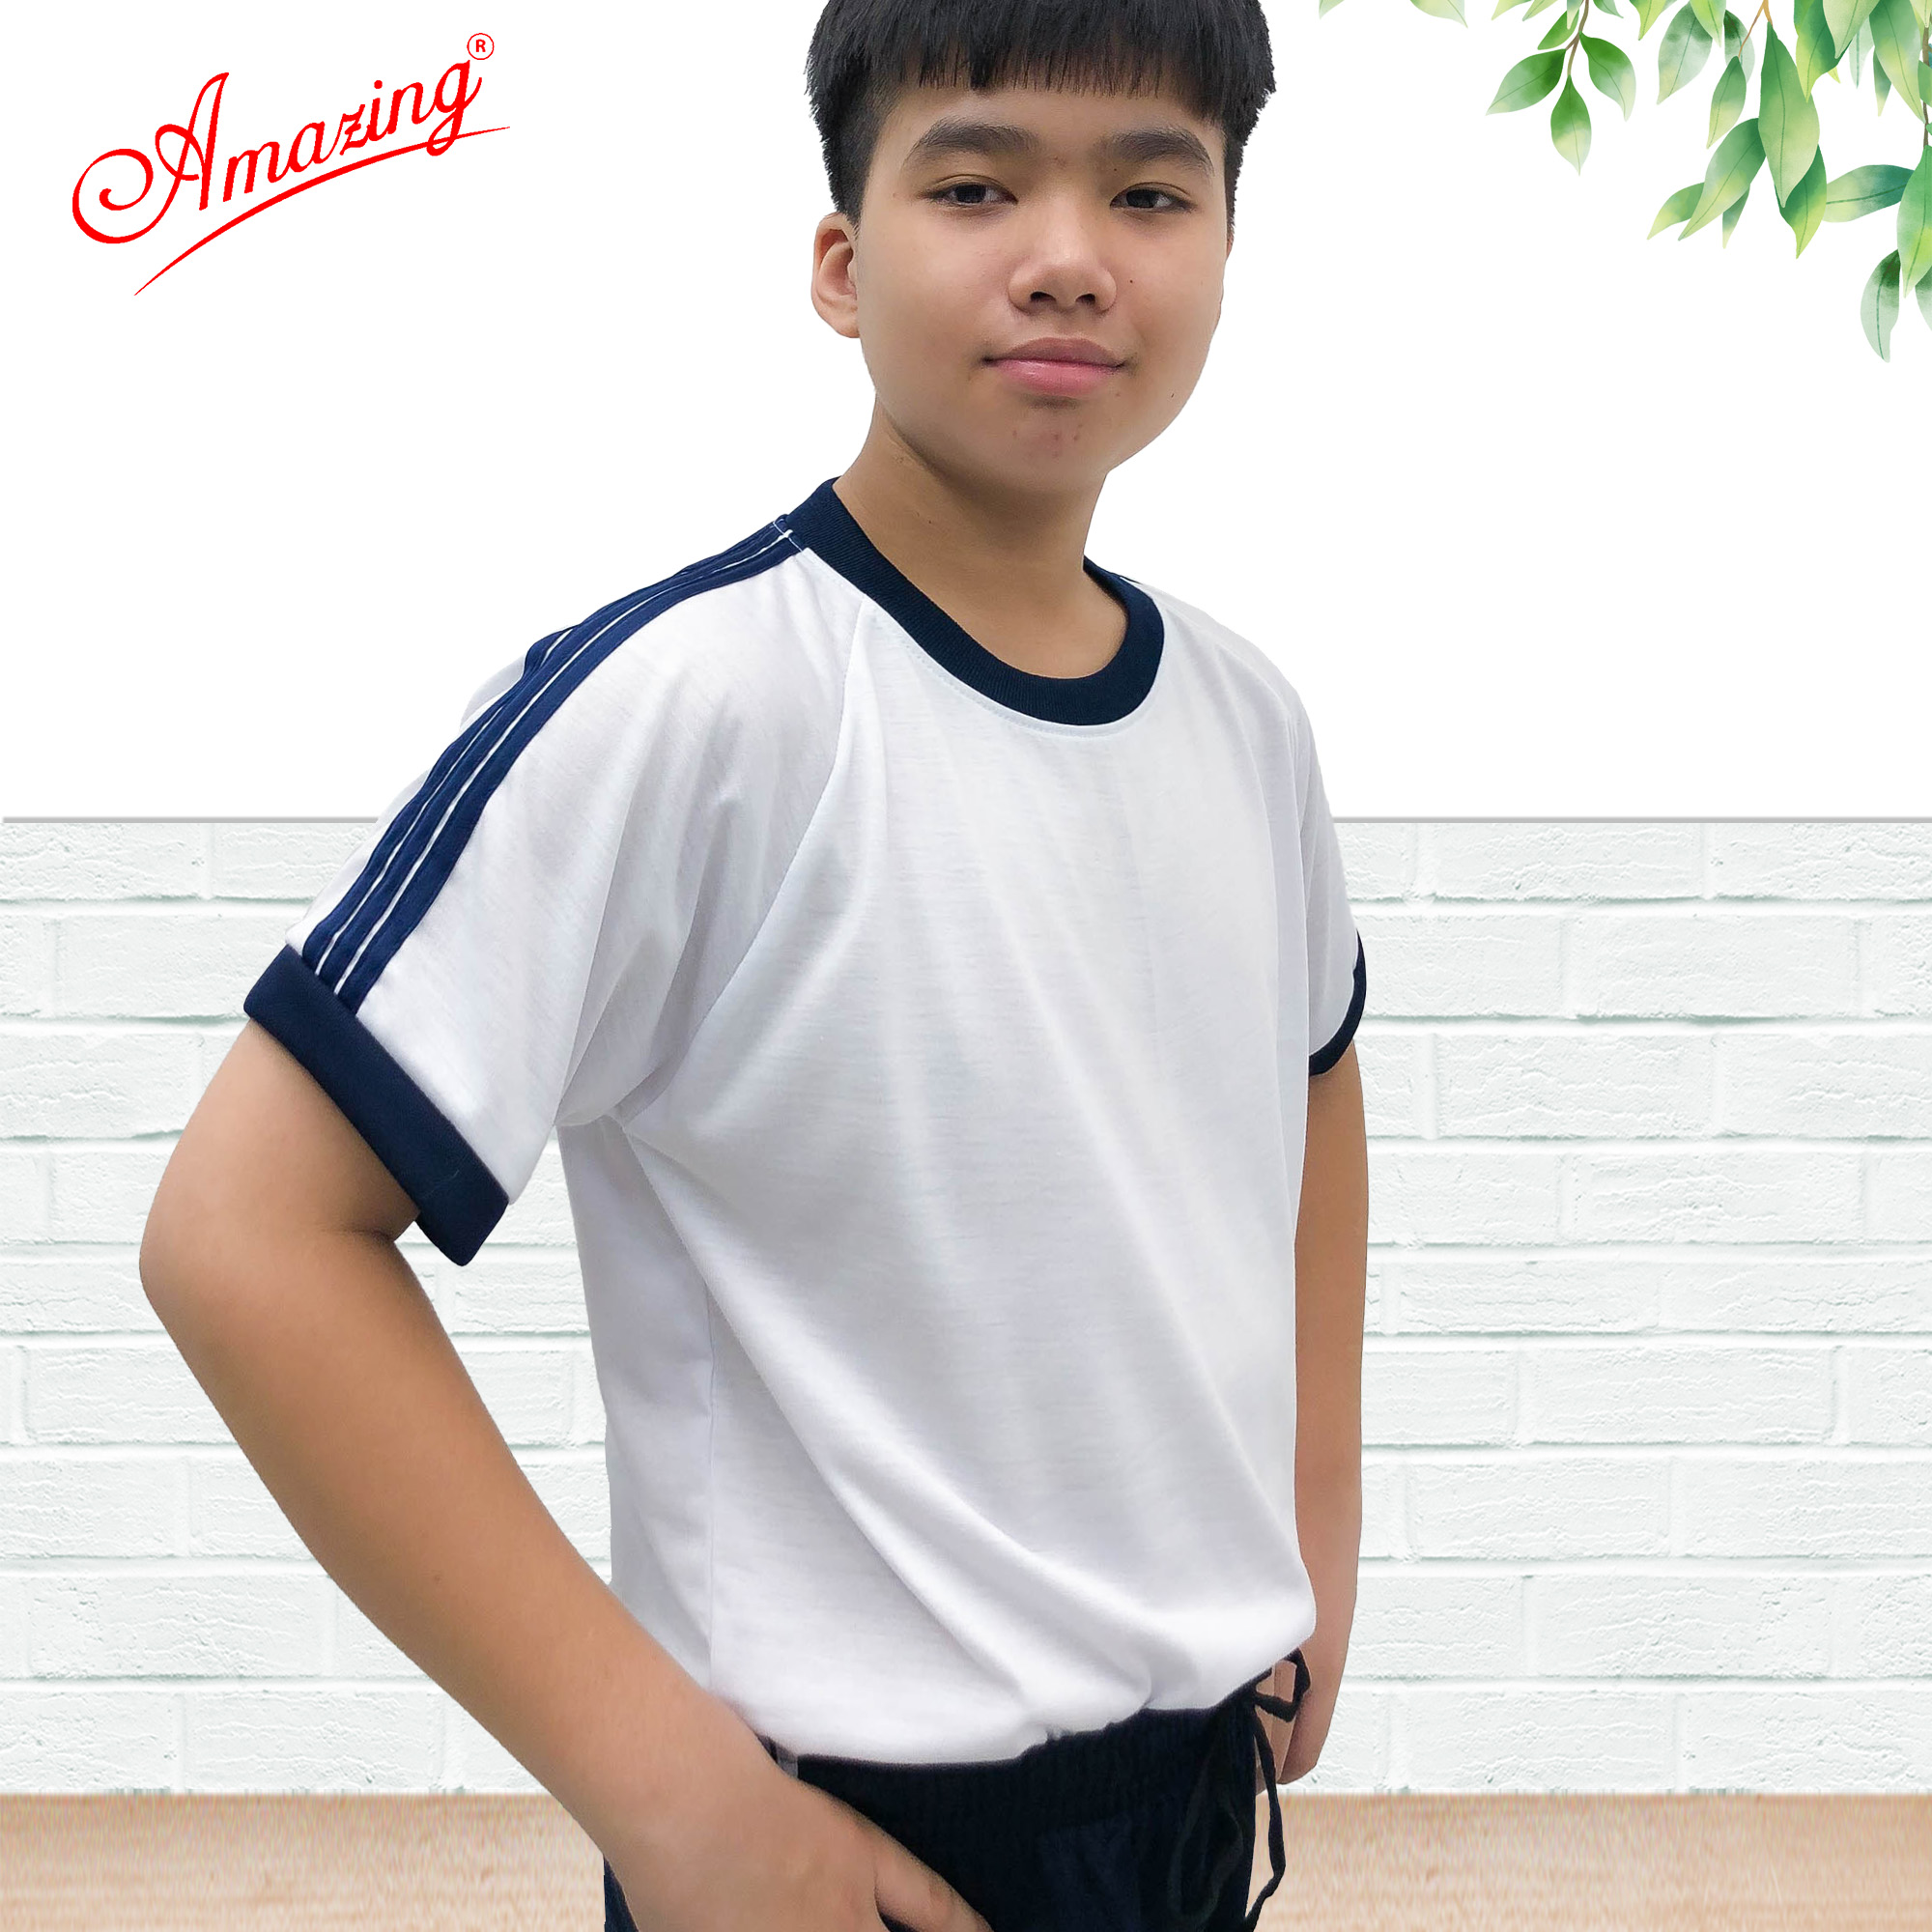 Áo thun thể dục thương hiệu Amazing cho bé trai, cổ bẻ và cổ tròn, đồng phục thể thao cho học sinh nam nữ các cấp